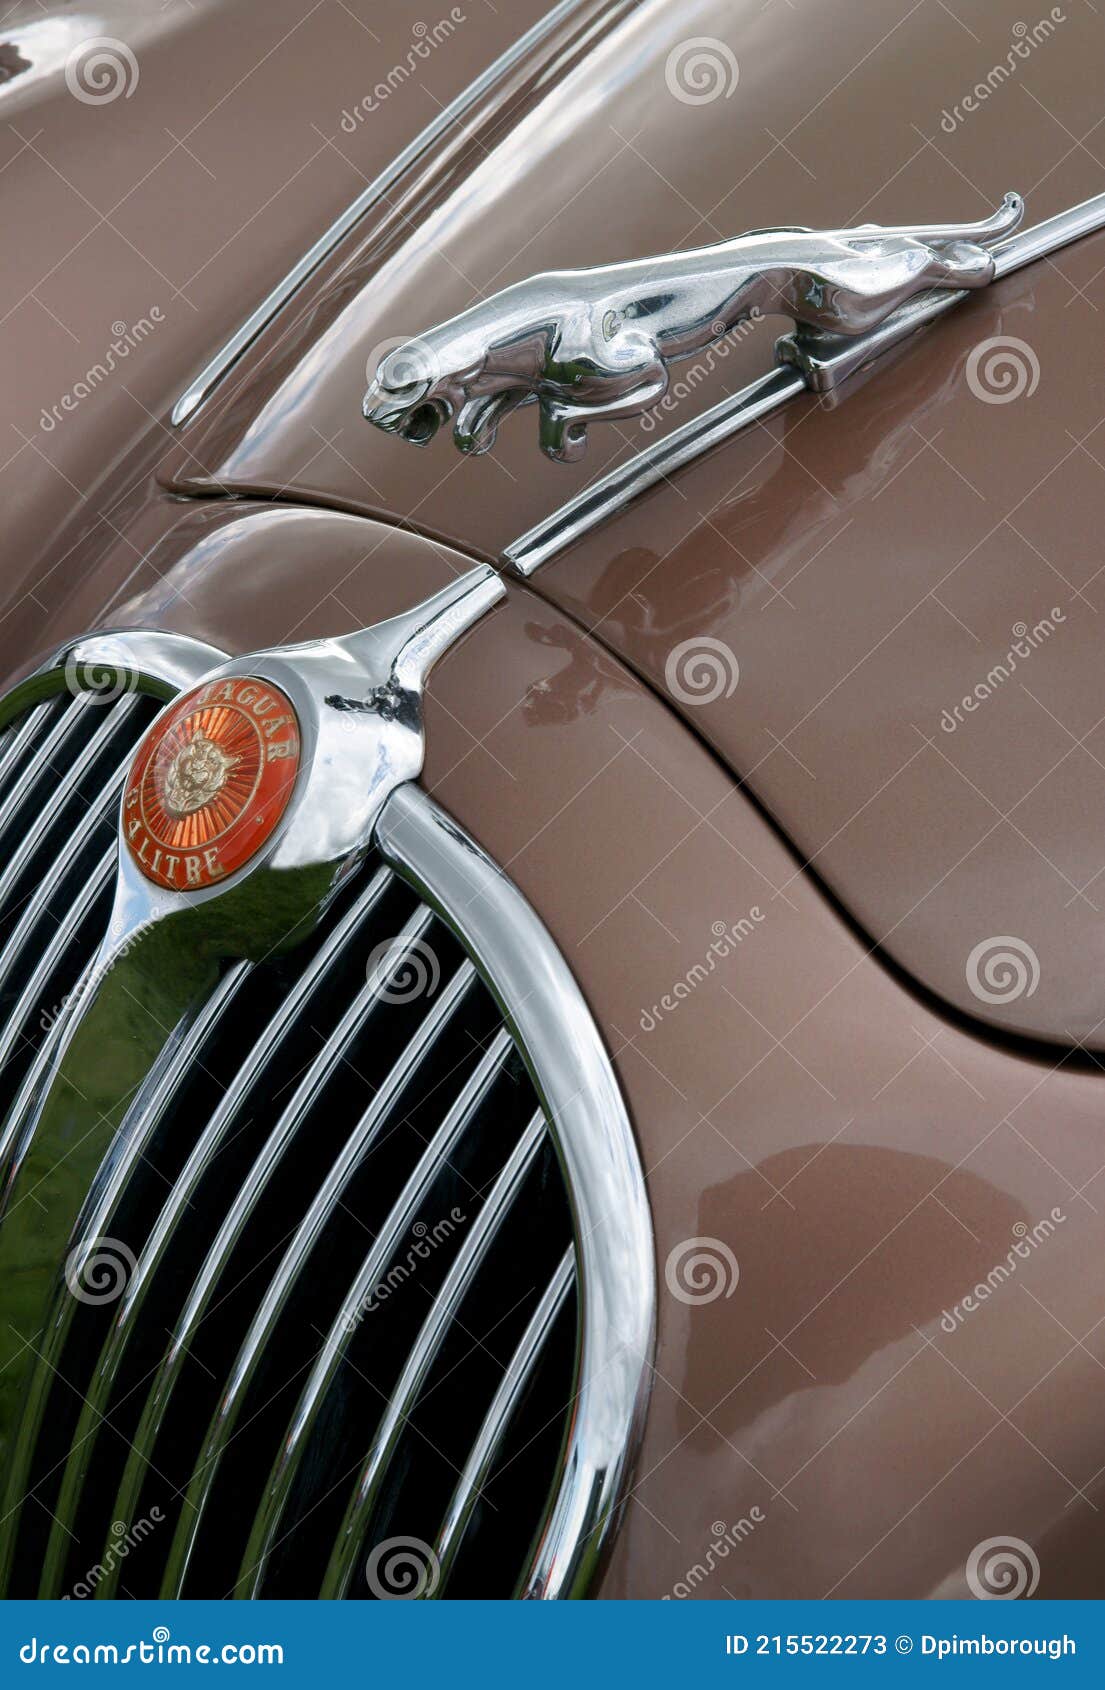 Jaguar Auto Haube Ornament redaktionelles stockfoto. Bild von britisch -  215522273